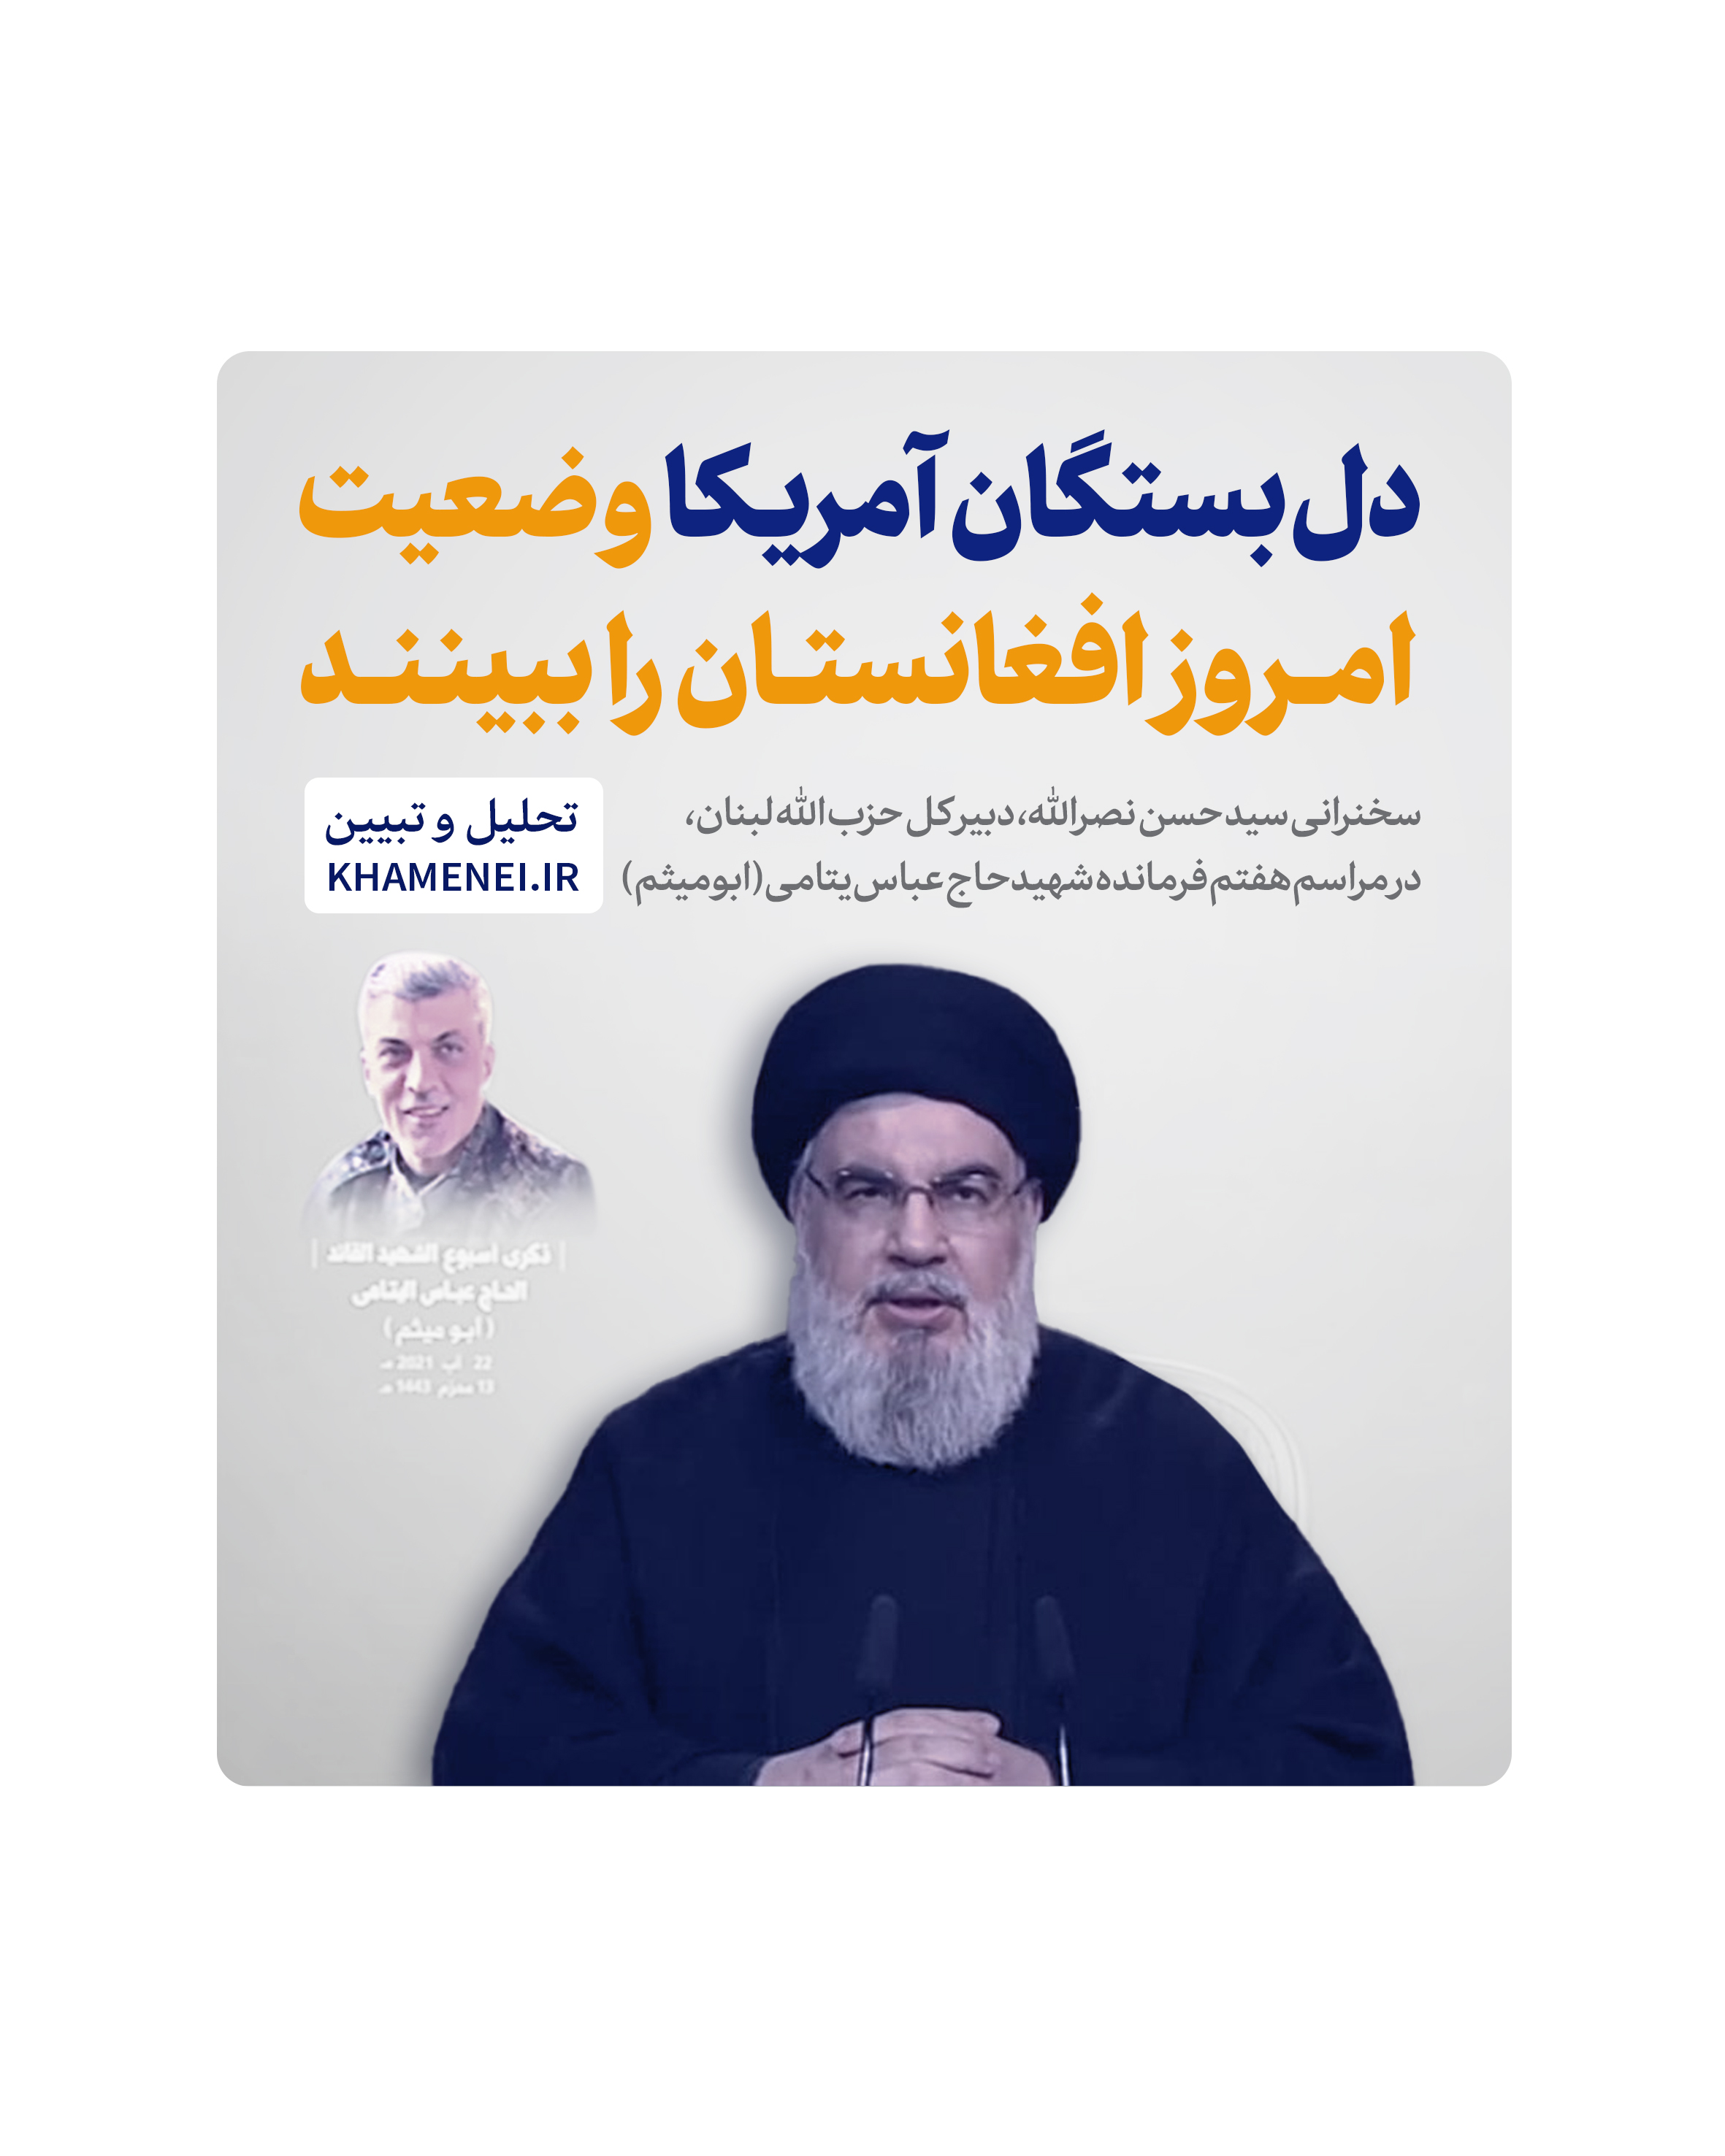 https://idc0-cdn0.khamenei.ir/ndata/news/48566/cover.jpg